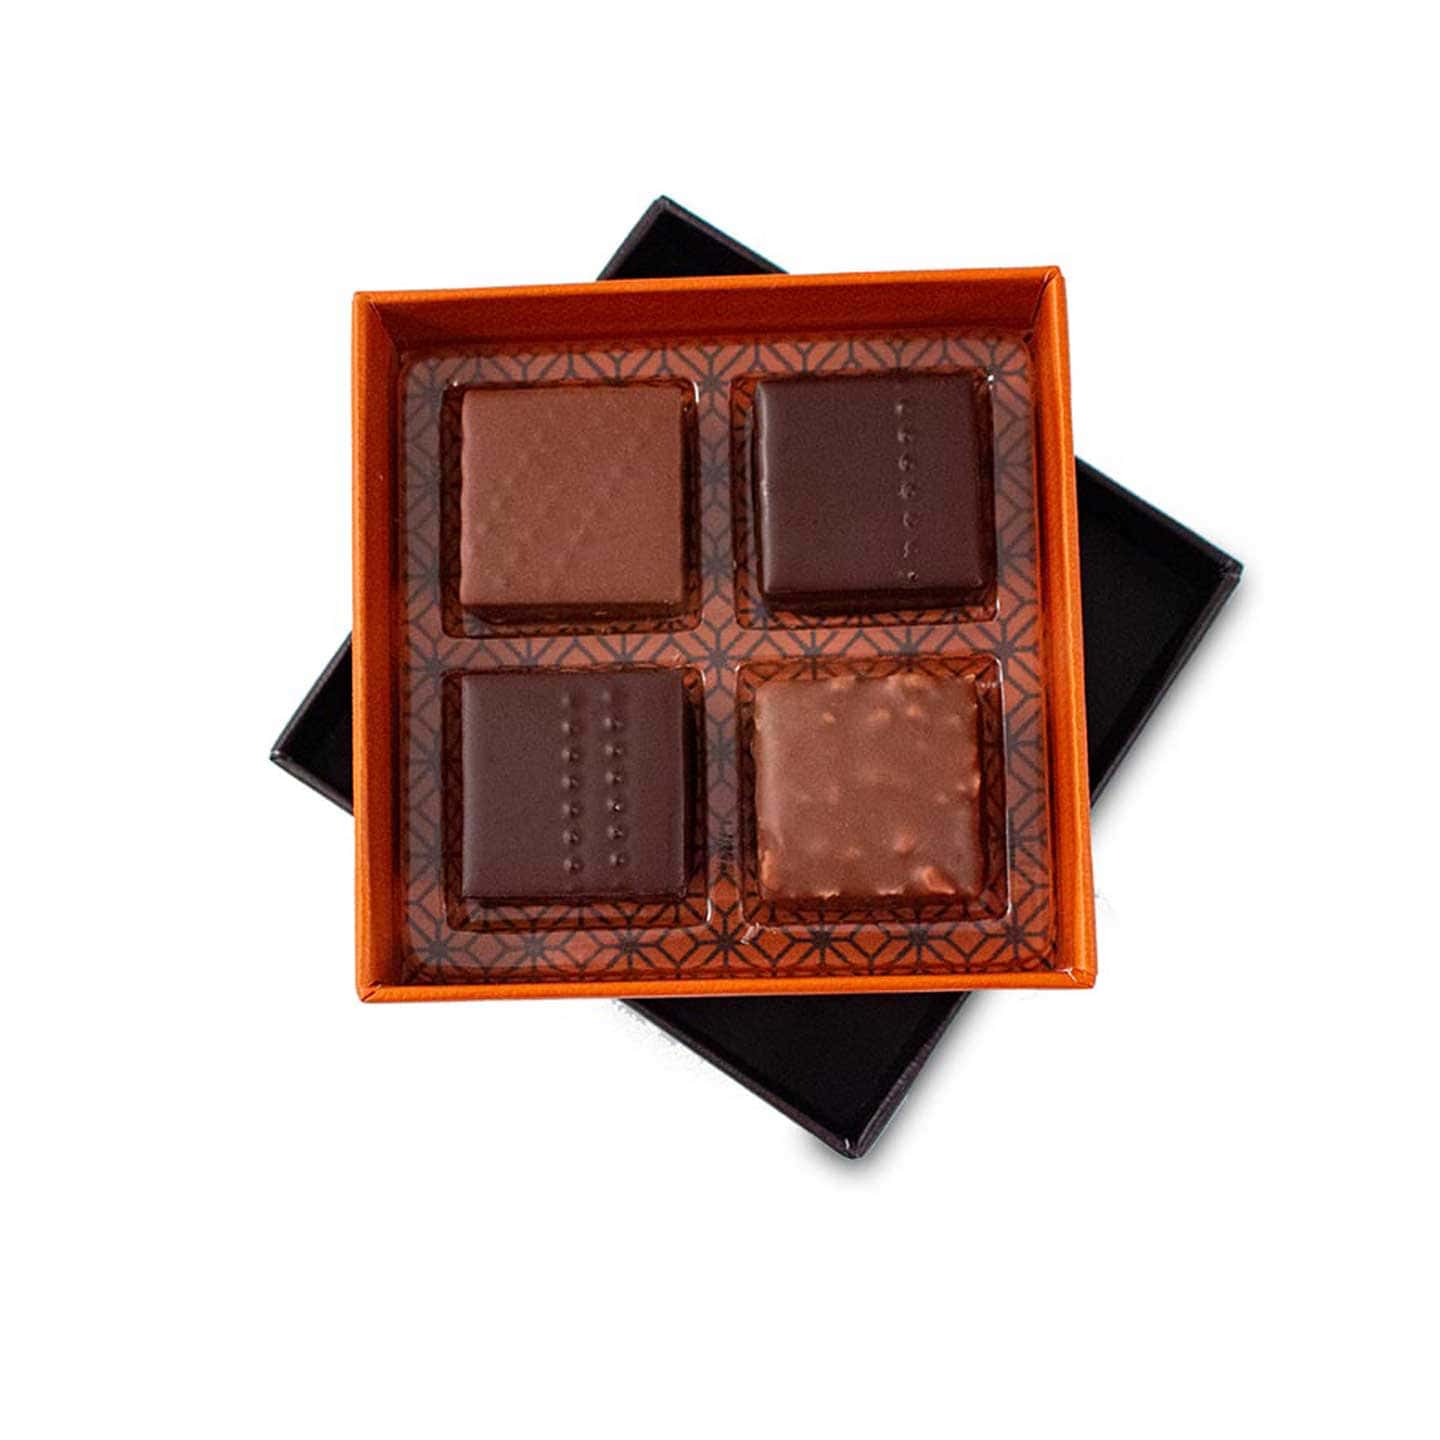 Assortiment Chocolats Pralinés Noir et Lait 30g - 4 pièces